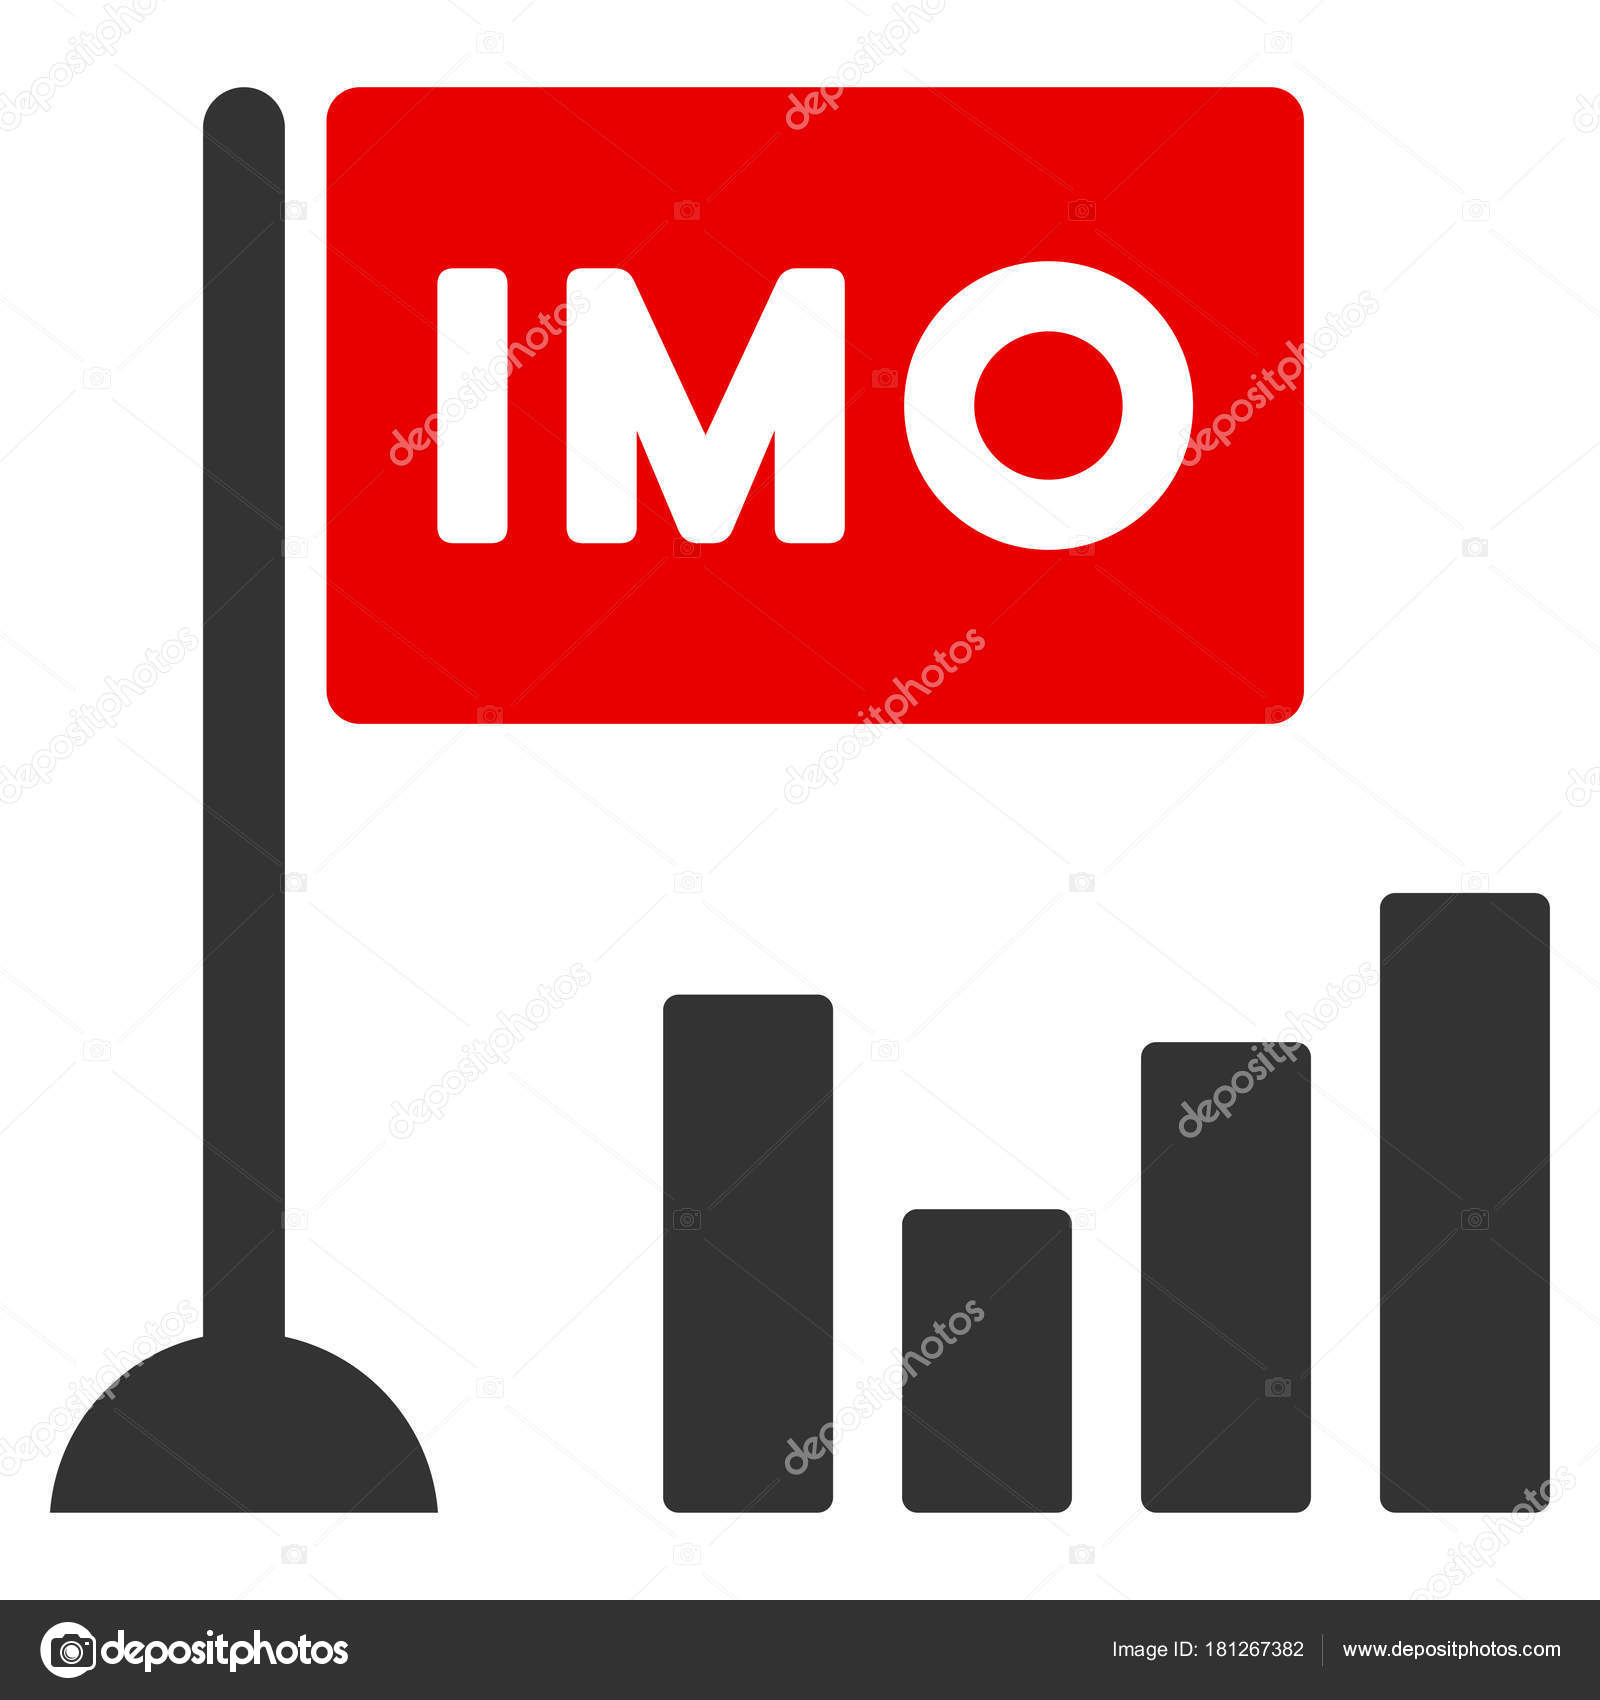 Imo Stock Chart